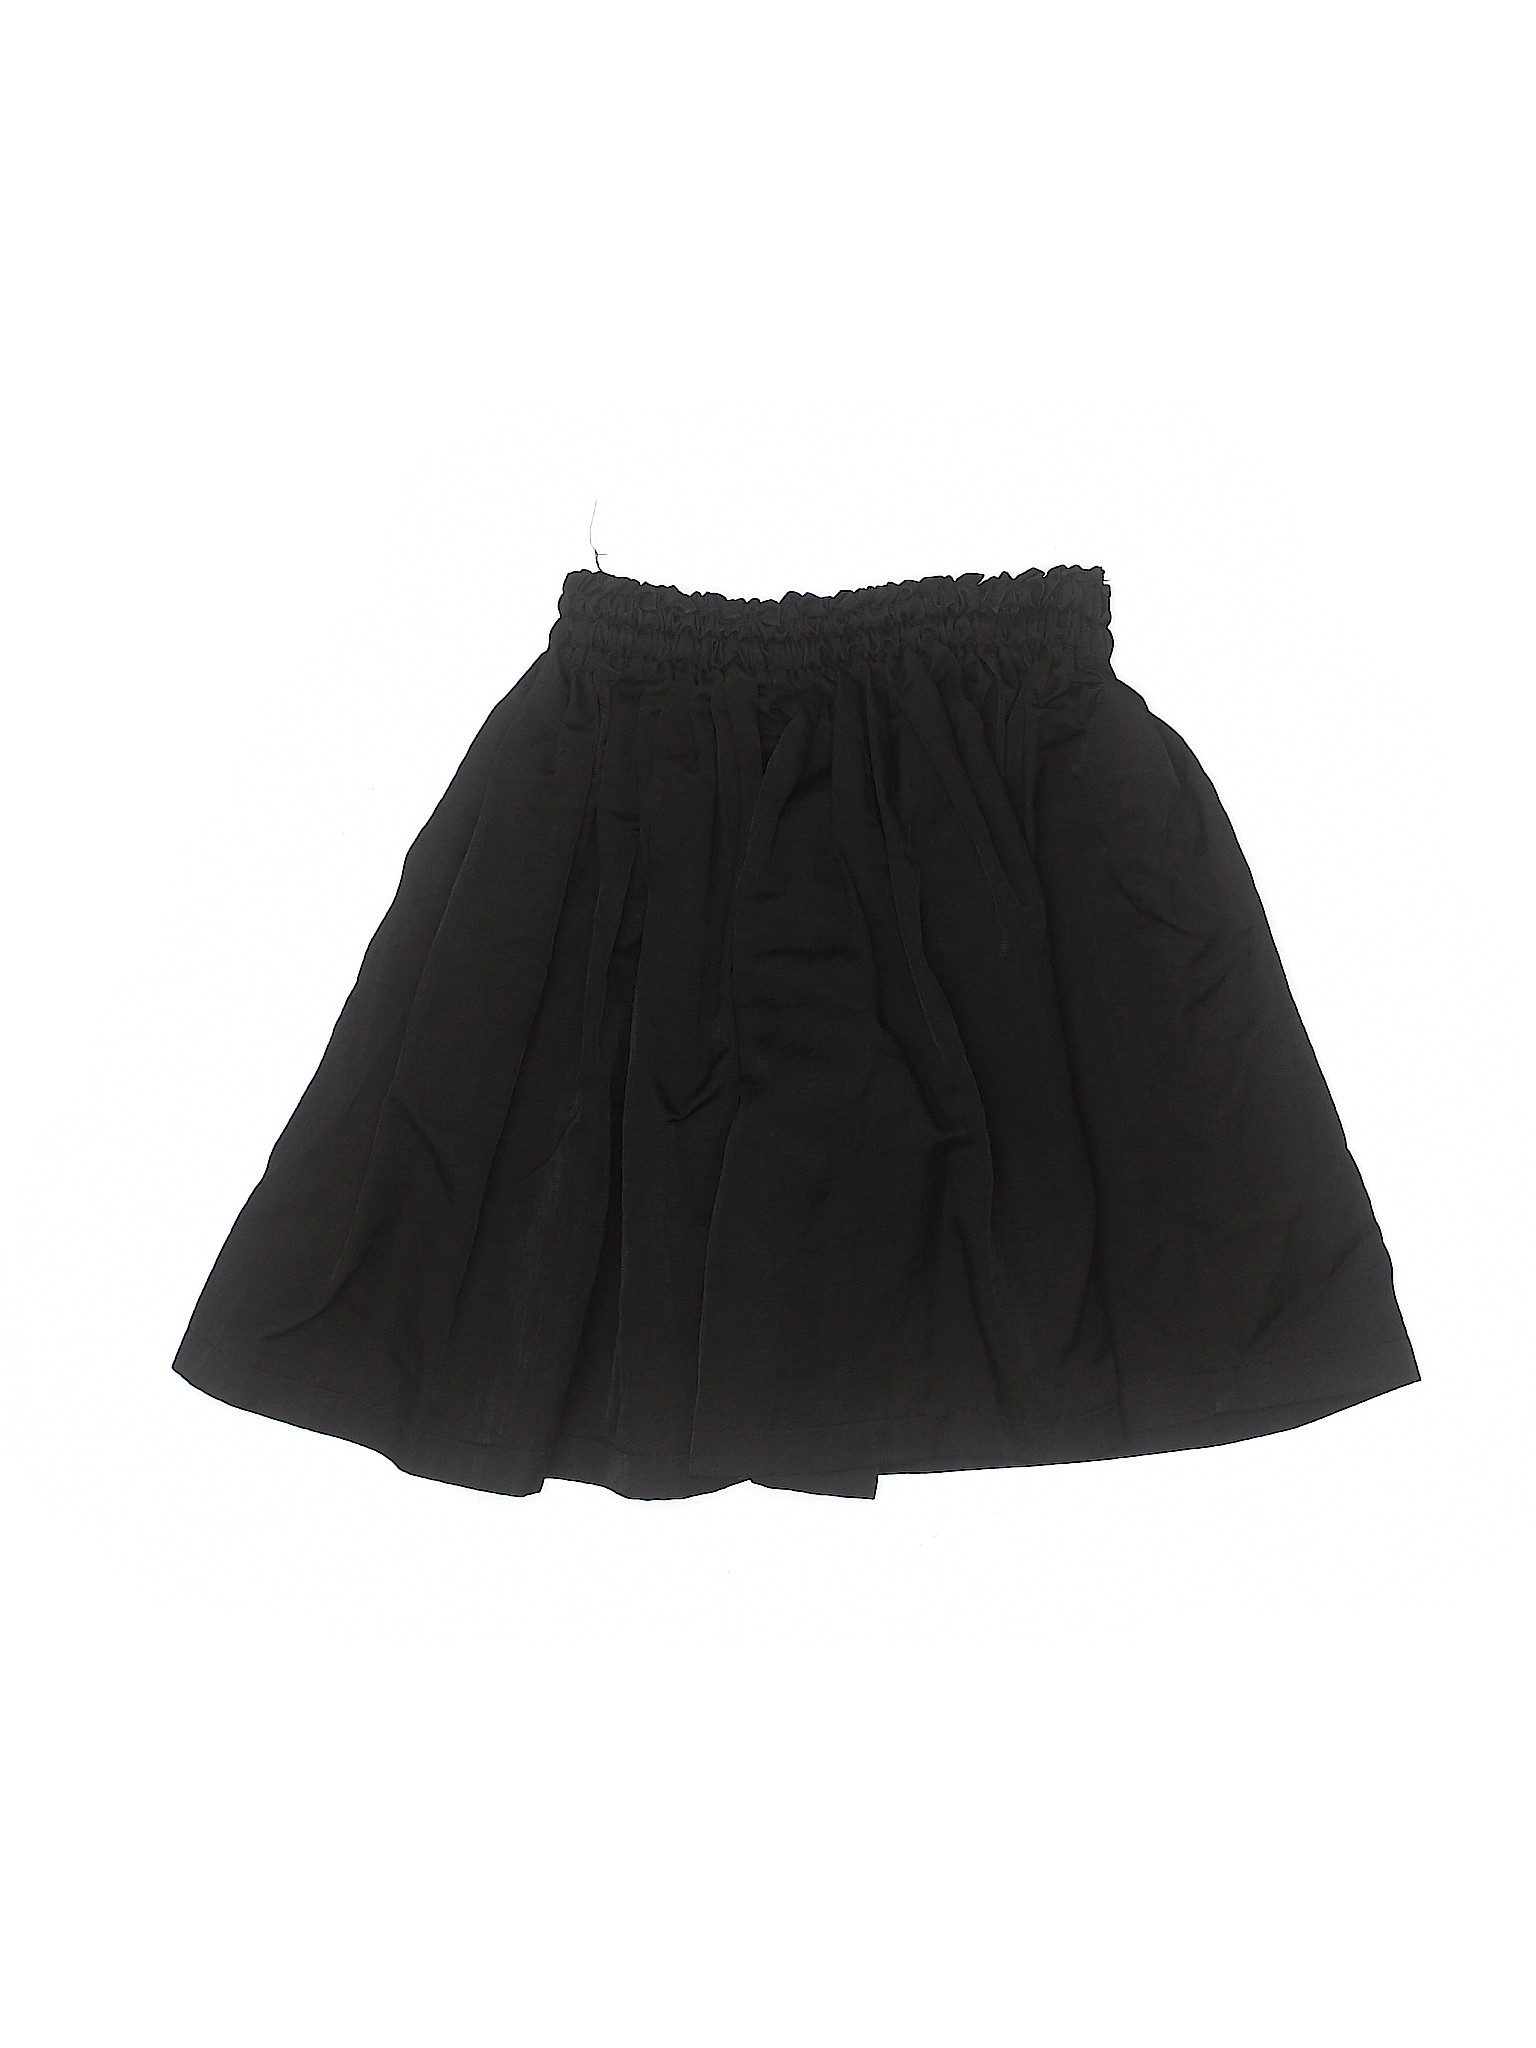 Wings Girls Black Skirt 6 | eBay